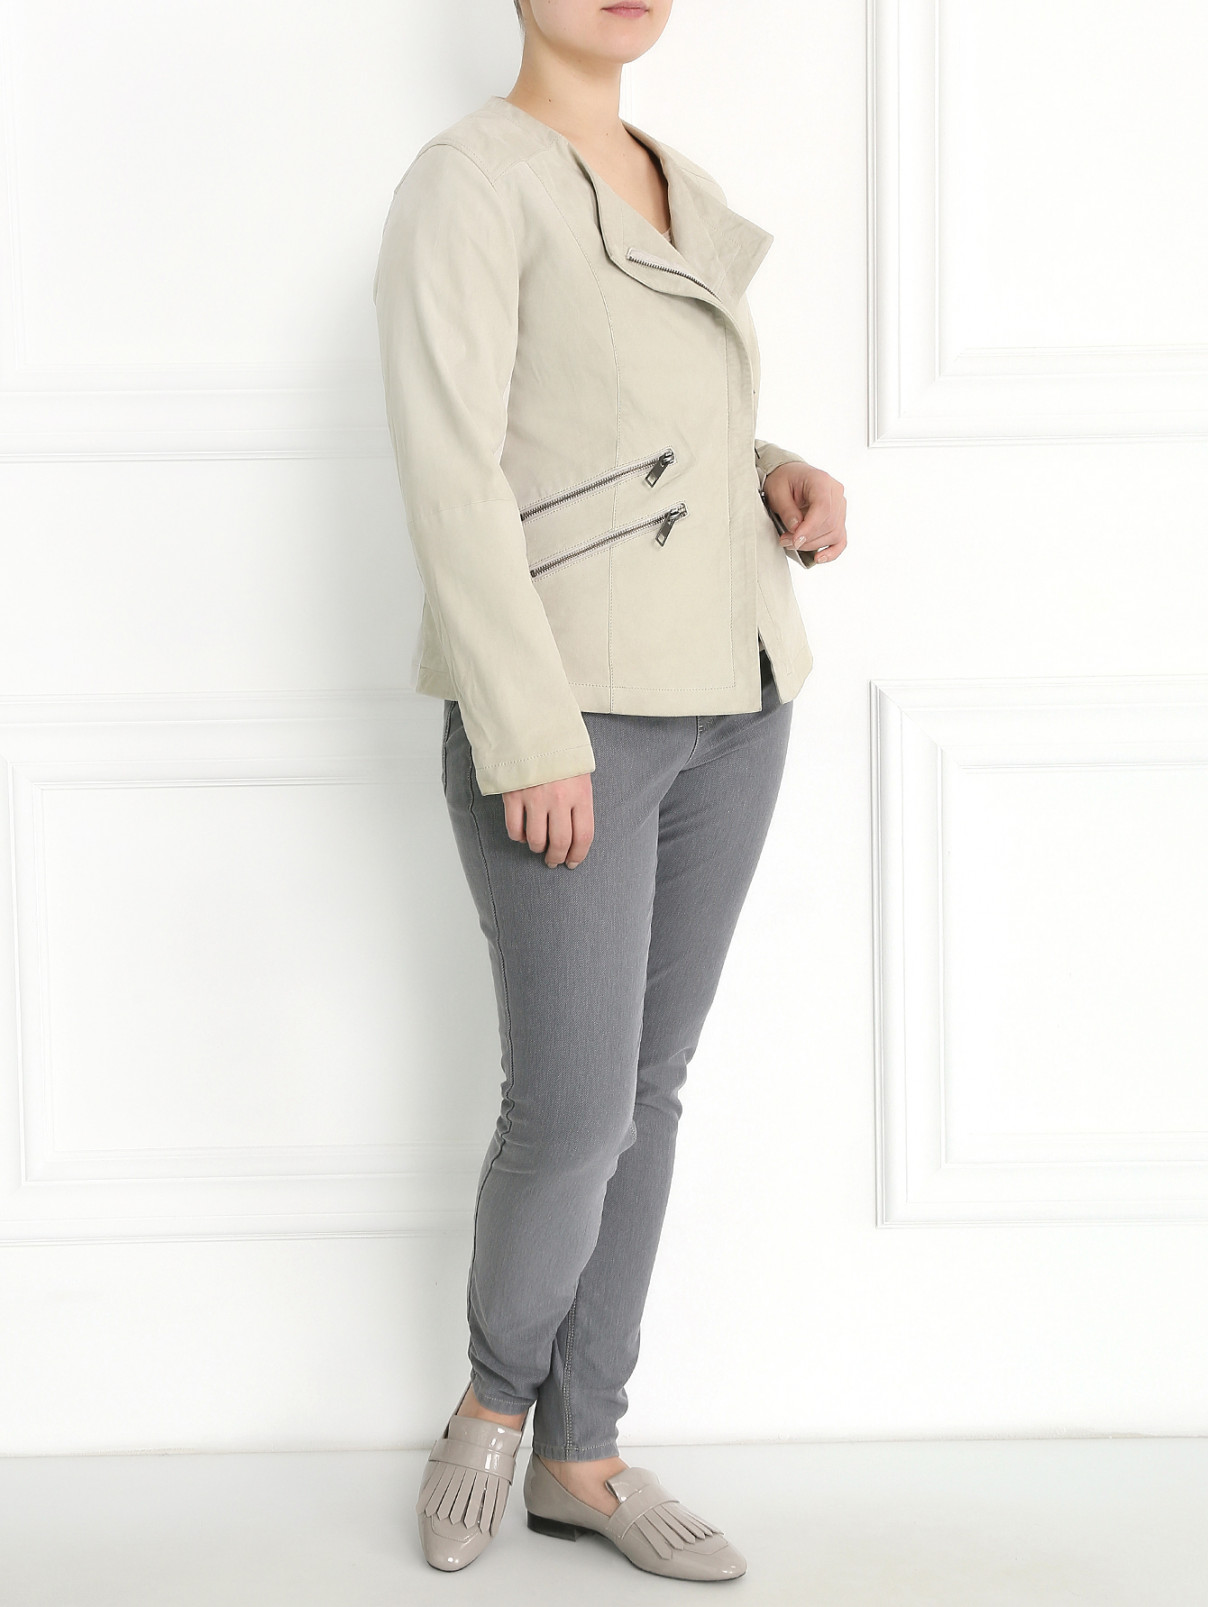 Замшевая куртка с молниями Marina Sport  –  Модель Общий вид  – Цвет:  Серый